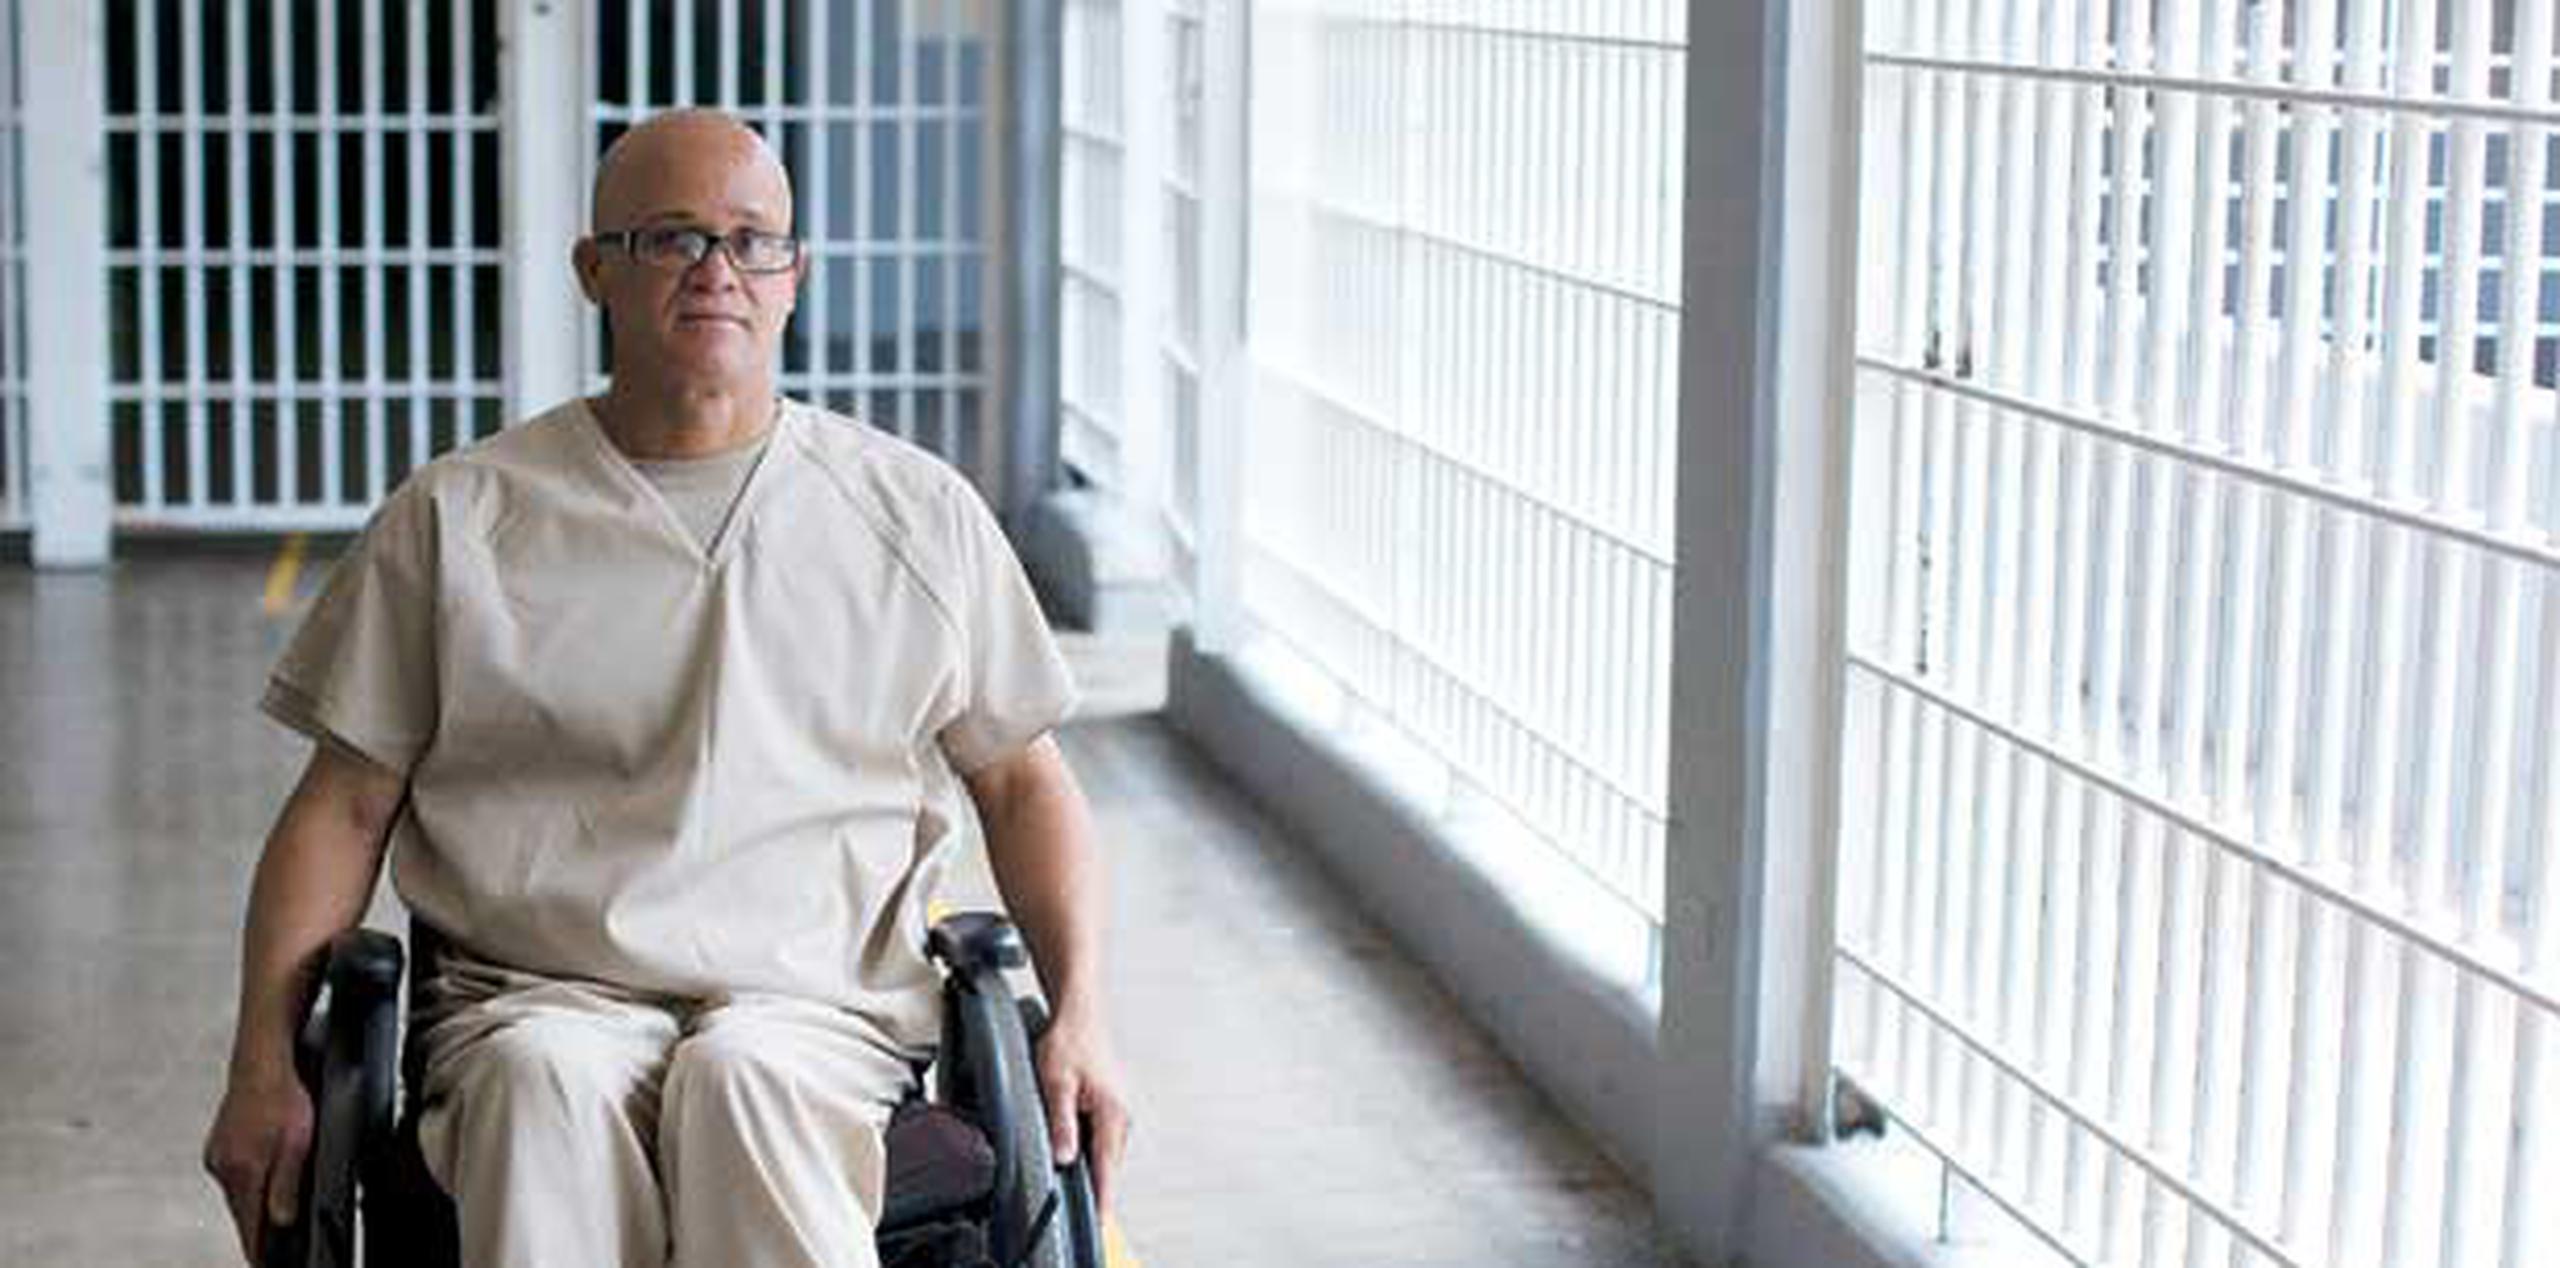 Alejandro Ovalle Mejías, es parapléjico y lleva siete años confinado en la 448 de la cárcel regional de Bayamón. (teresa.canino@gfrmedia.com)